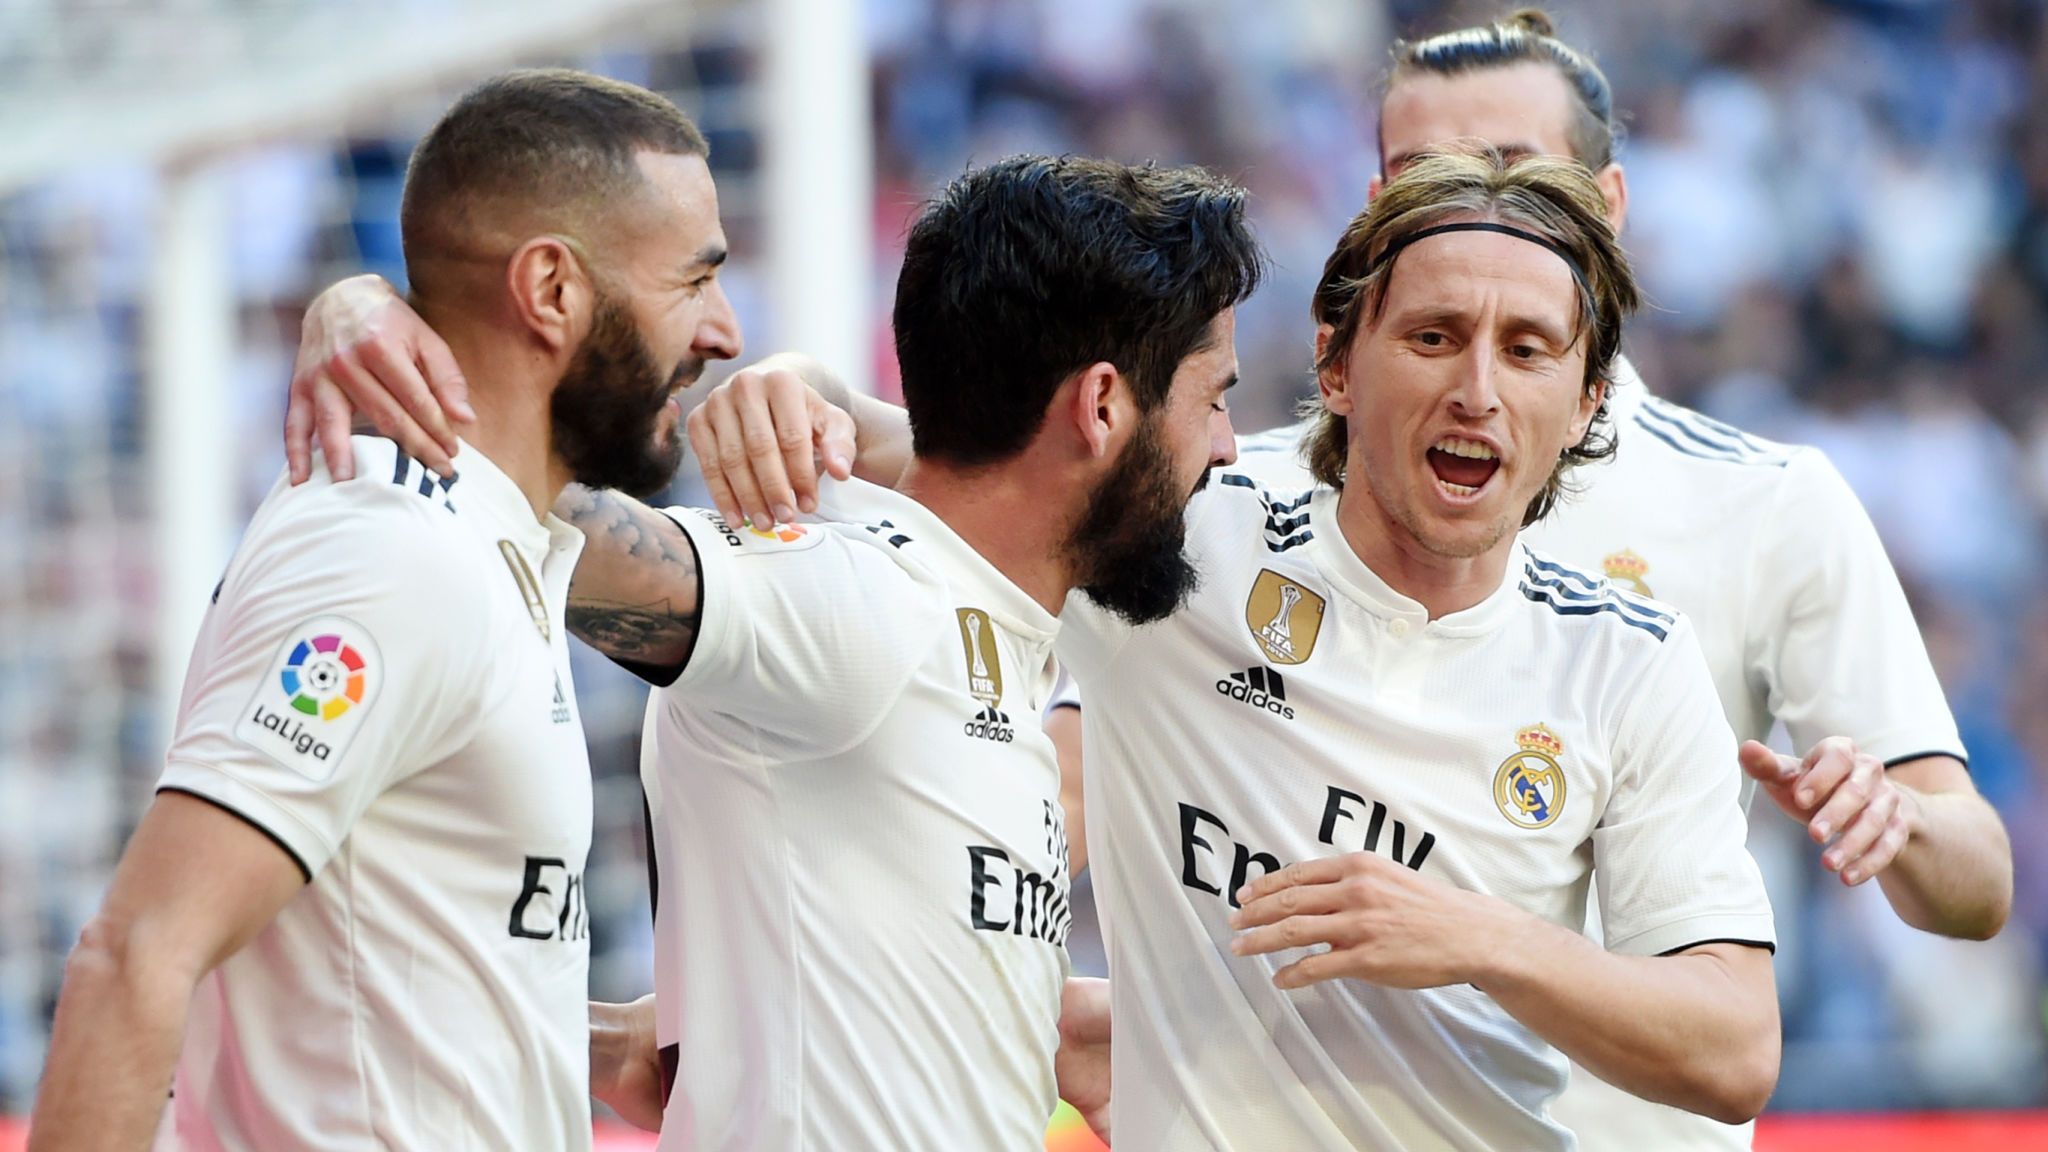 Les joueurs du Real Madrid s’entraînent à domicile pendant la mise en quarantaine